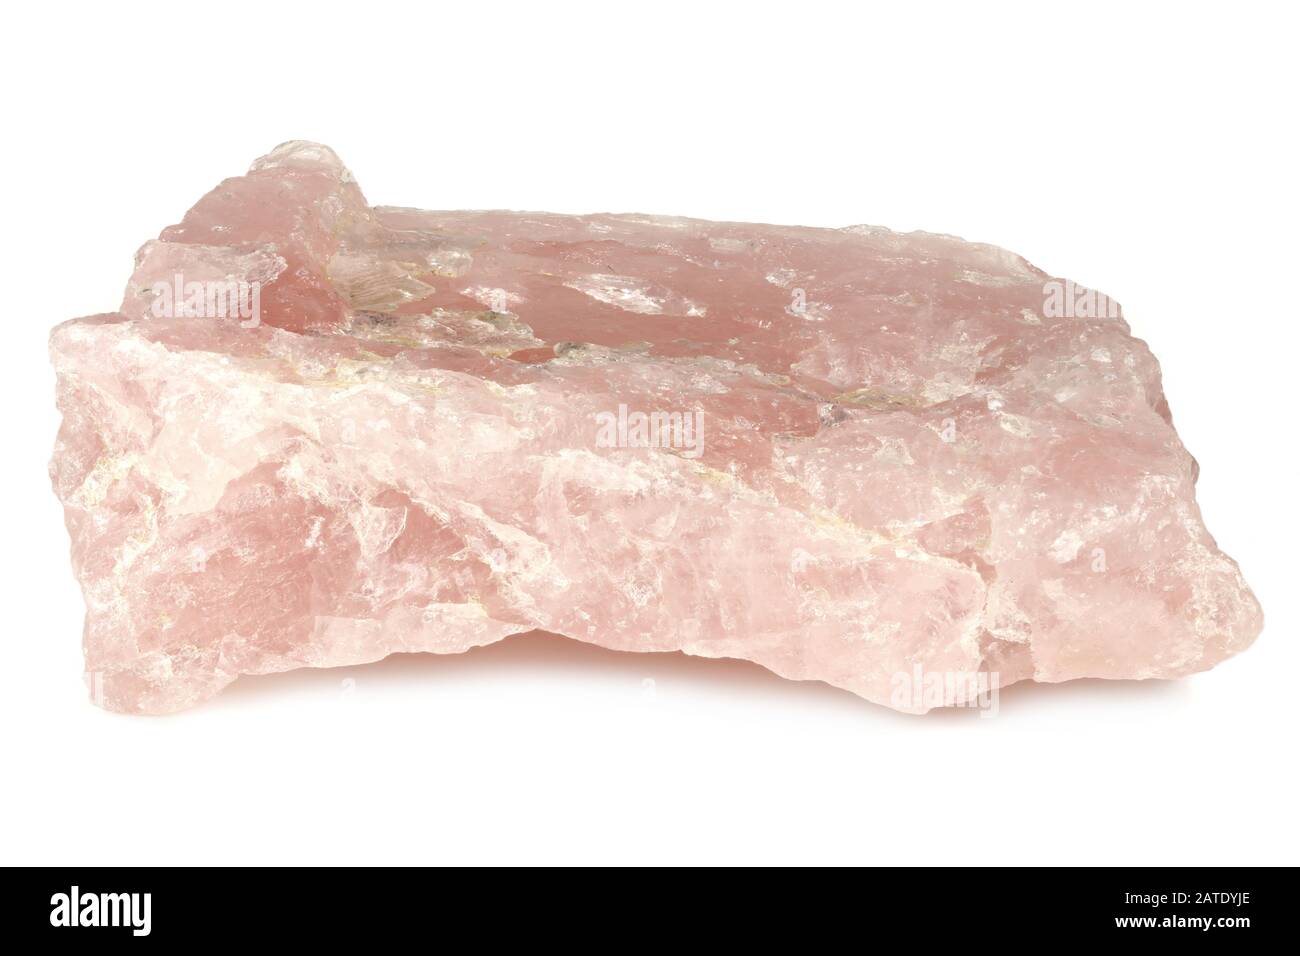 rose quartz from Namibia isolated on white background Stock Photo